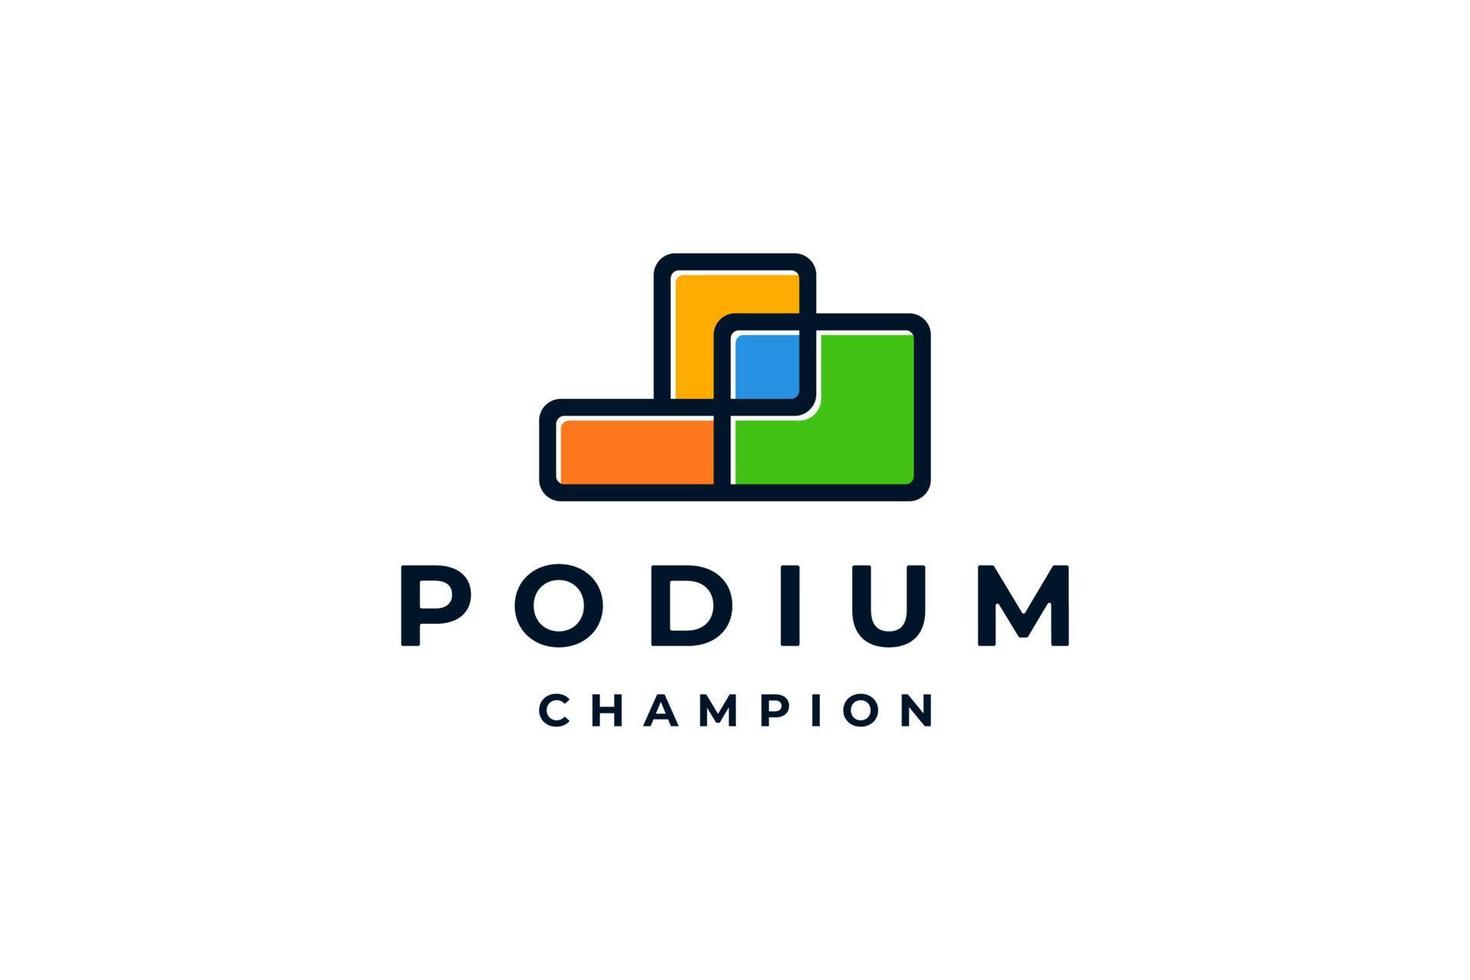 Orange vert podium champion tournoi logo vecteur